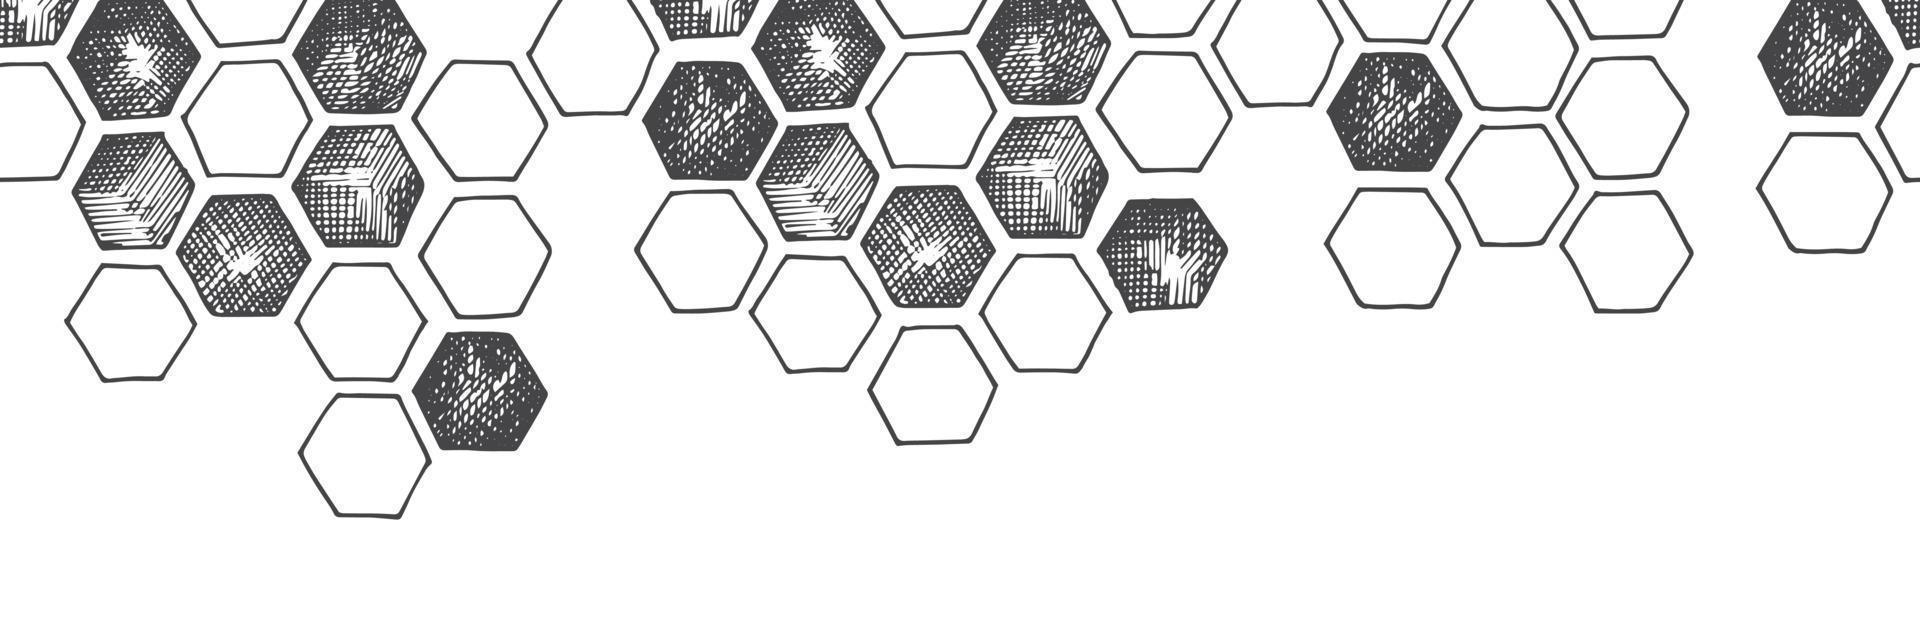 bordure transparente de vecteur, motif, bannière avec des nids d'abeilles. graphiques d'impression vintage vecteur